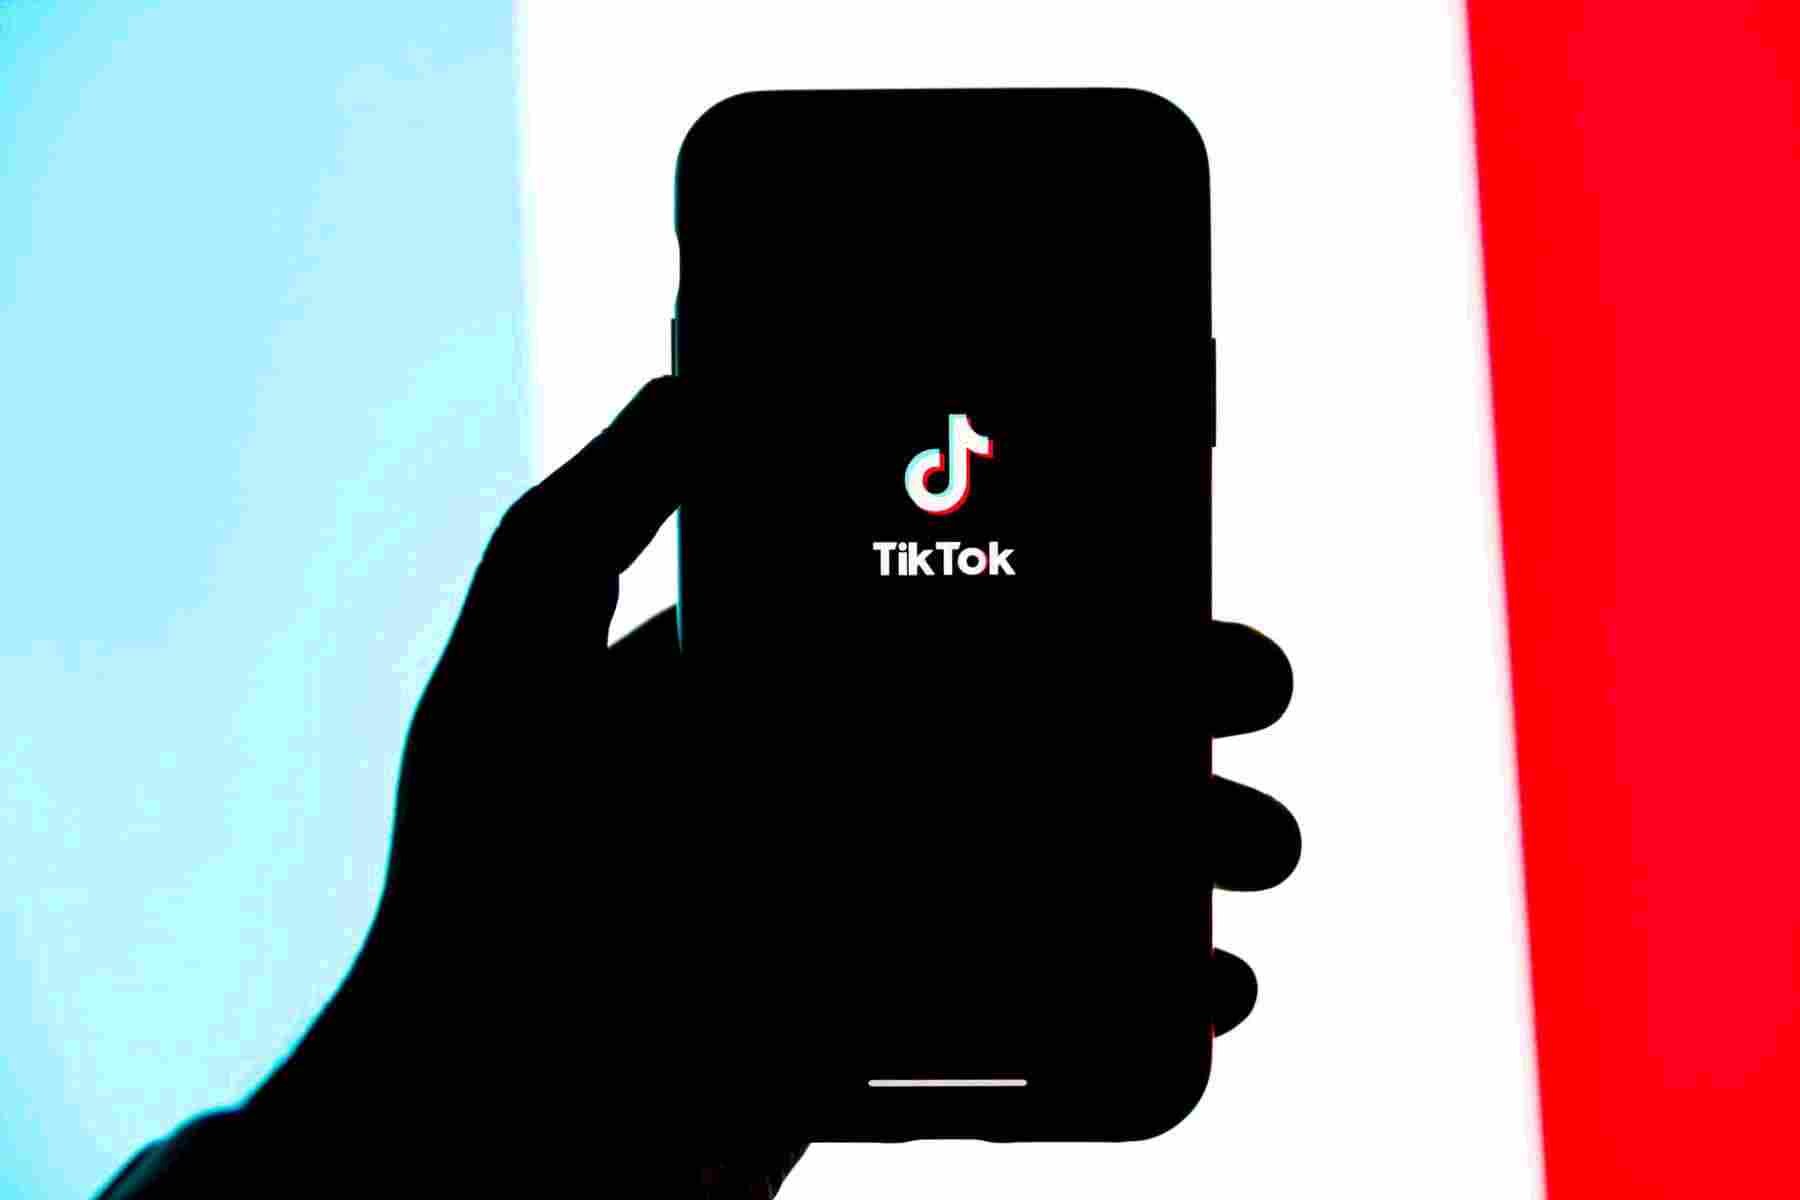 TikTok Phone